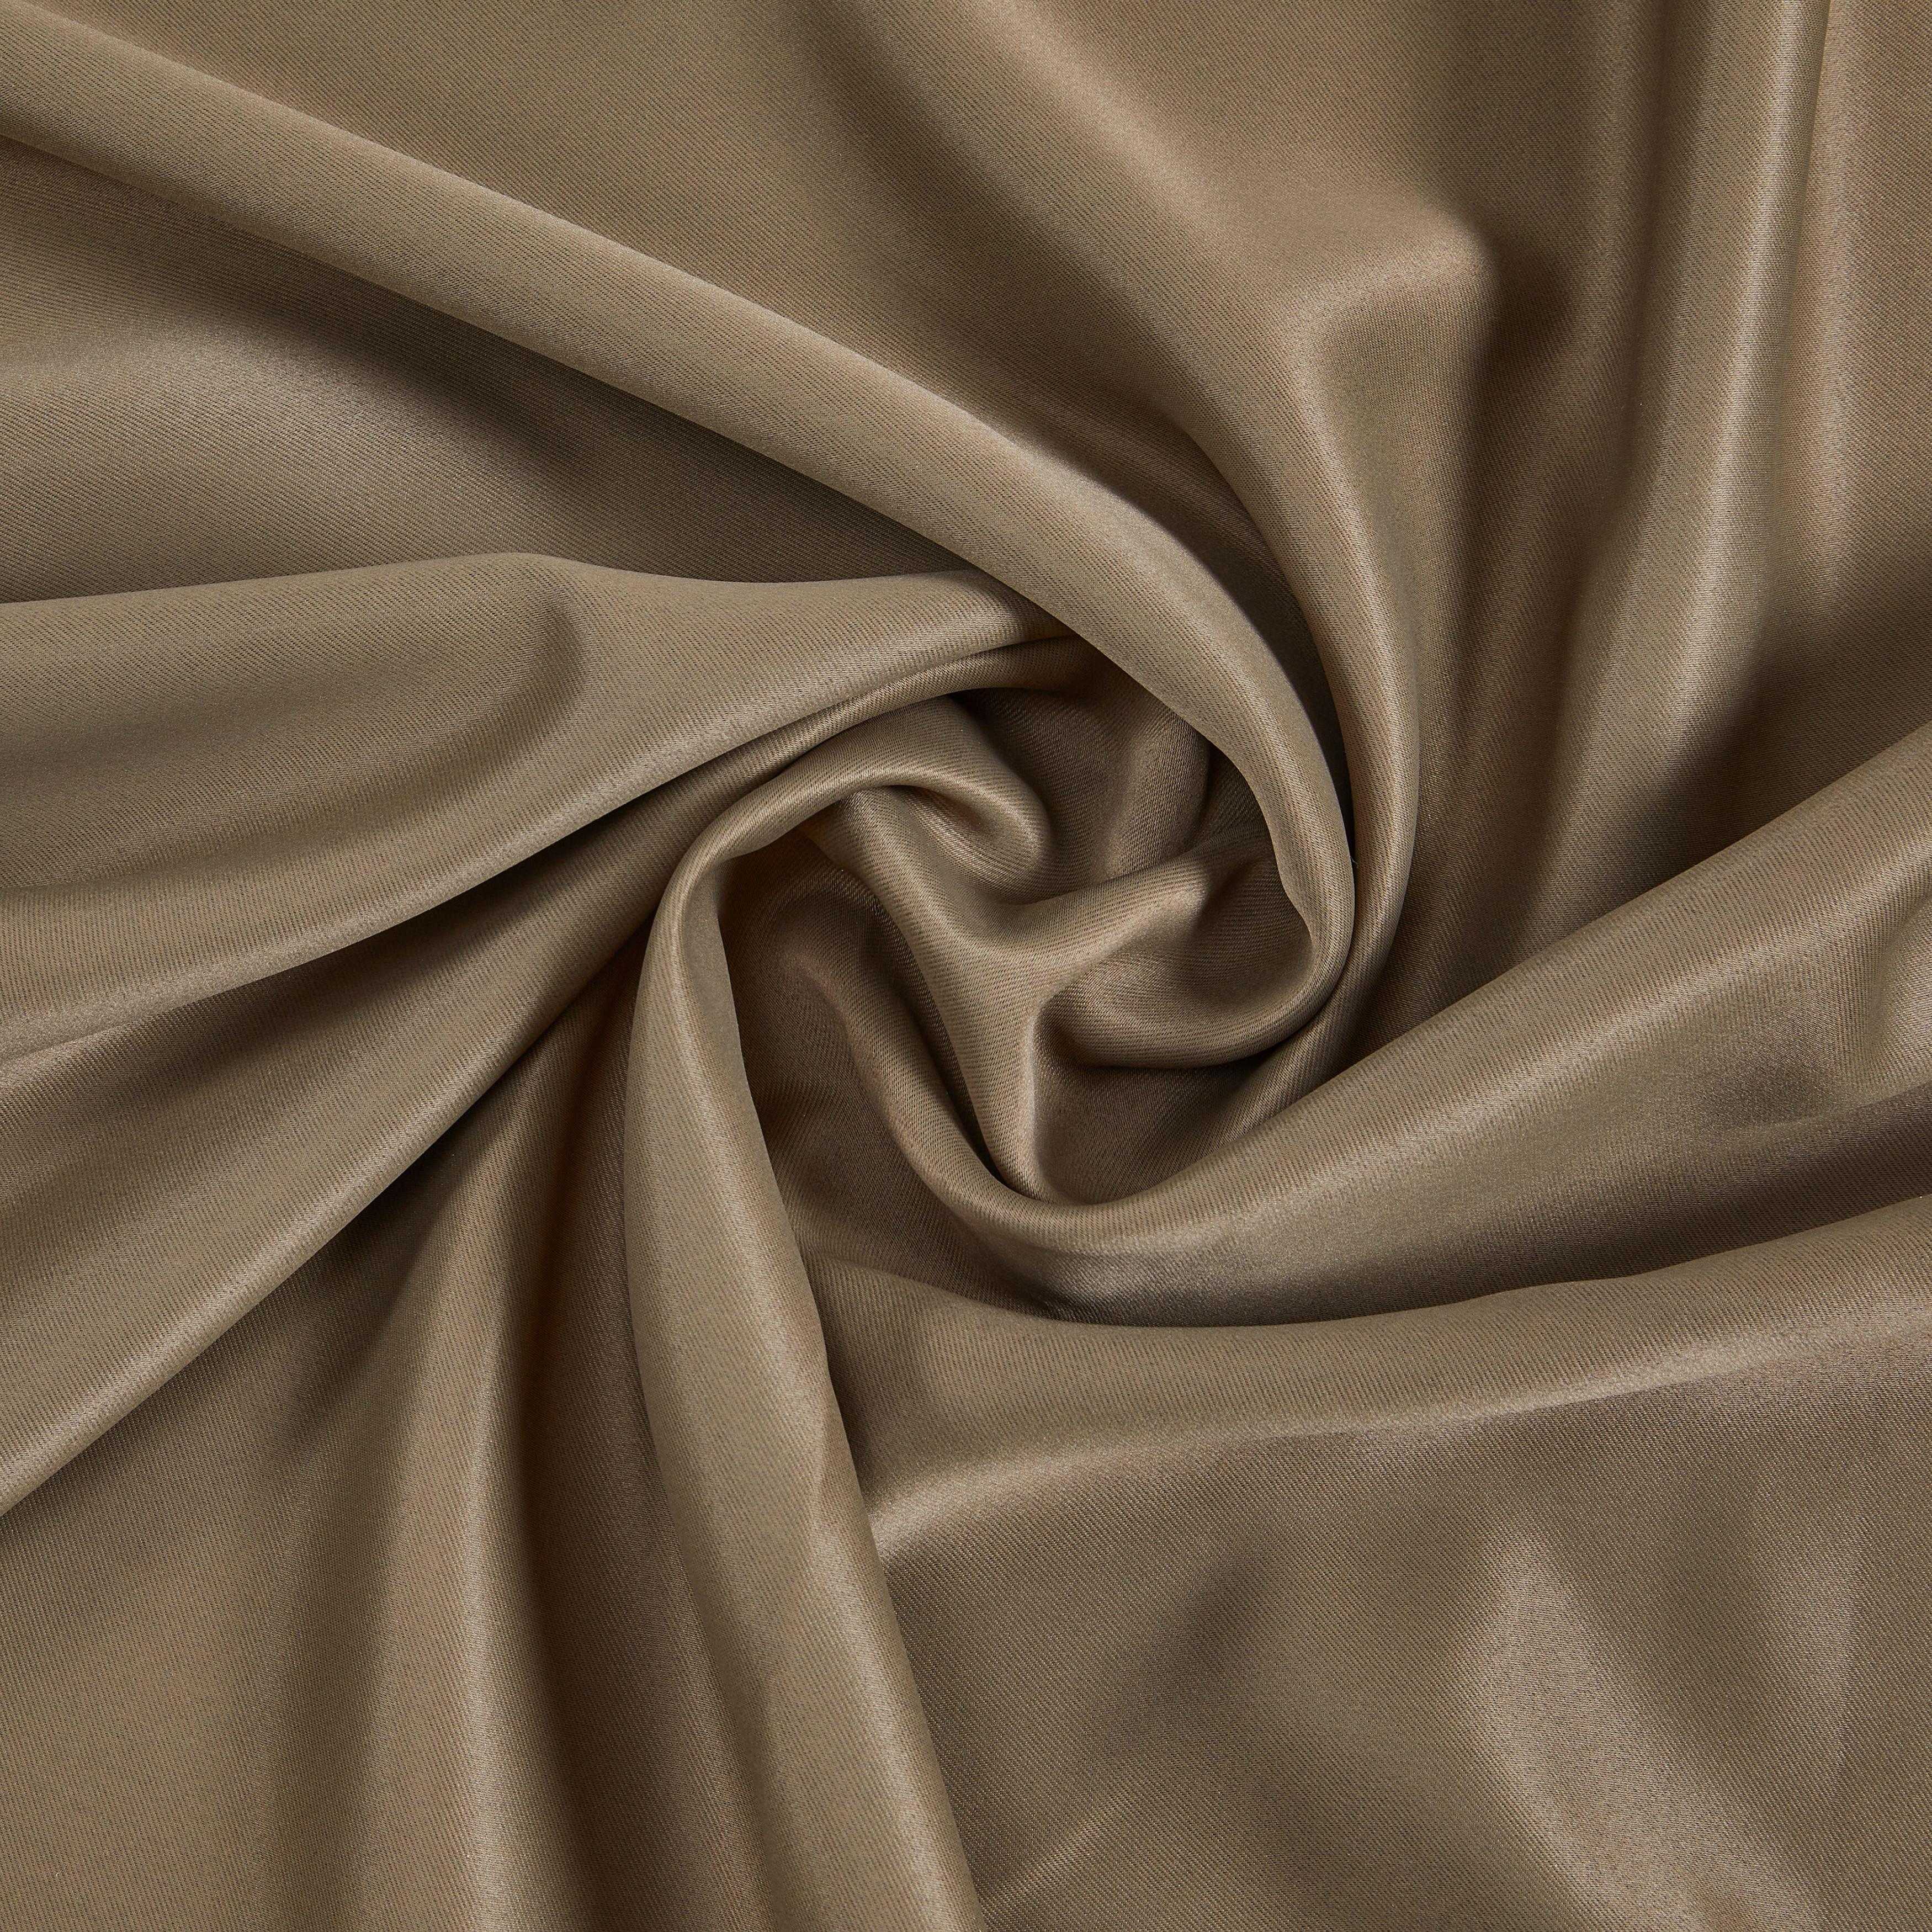 Zatemnitvena Zavesa Ricco - rjava, tekstil (140/245cm) - Modern Living